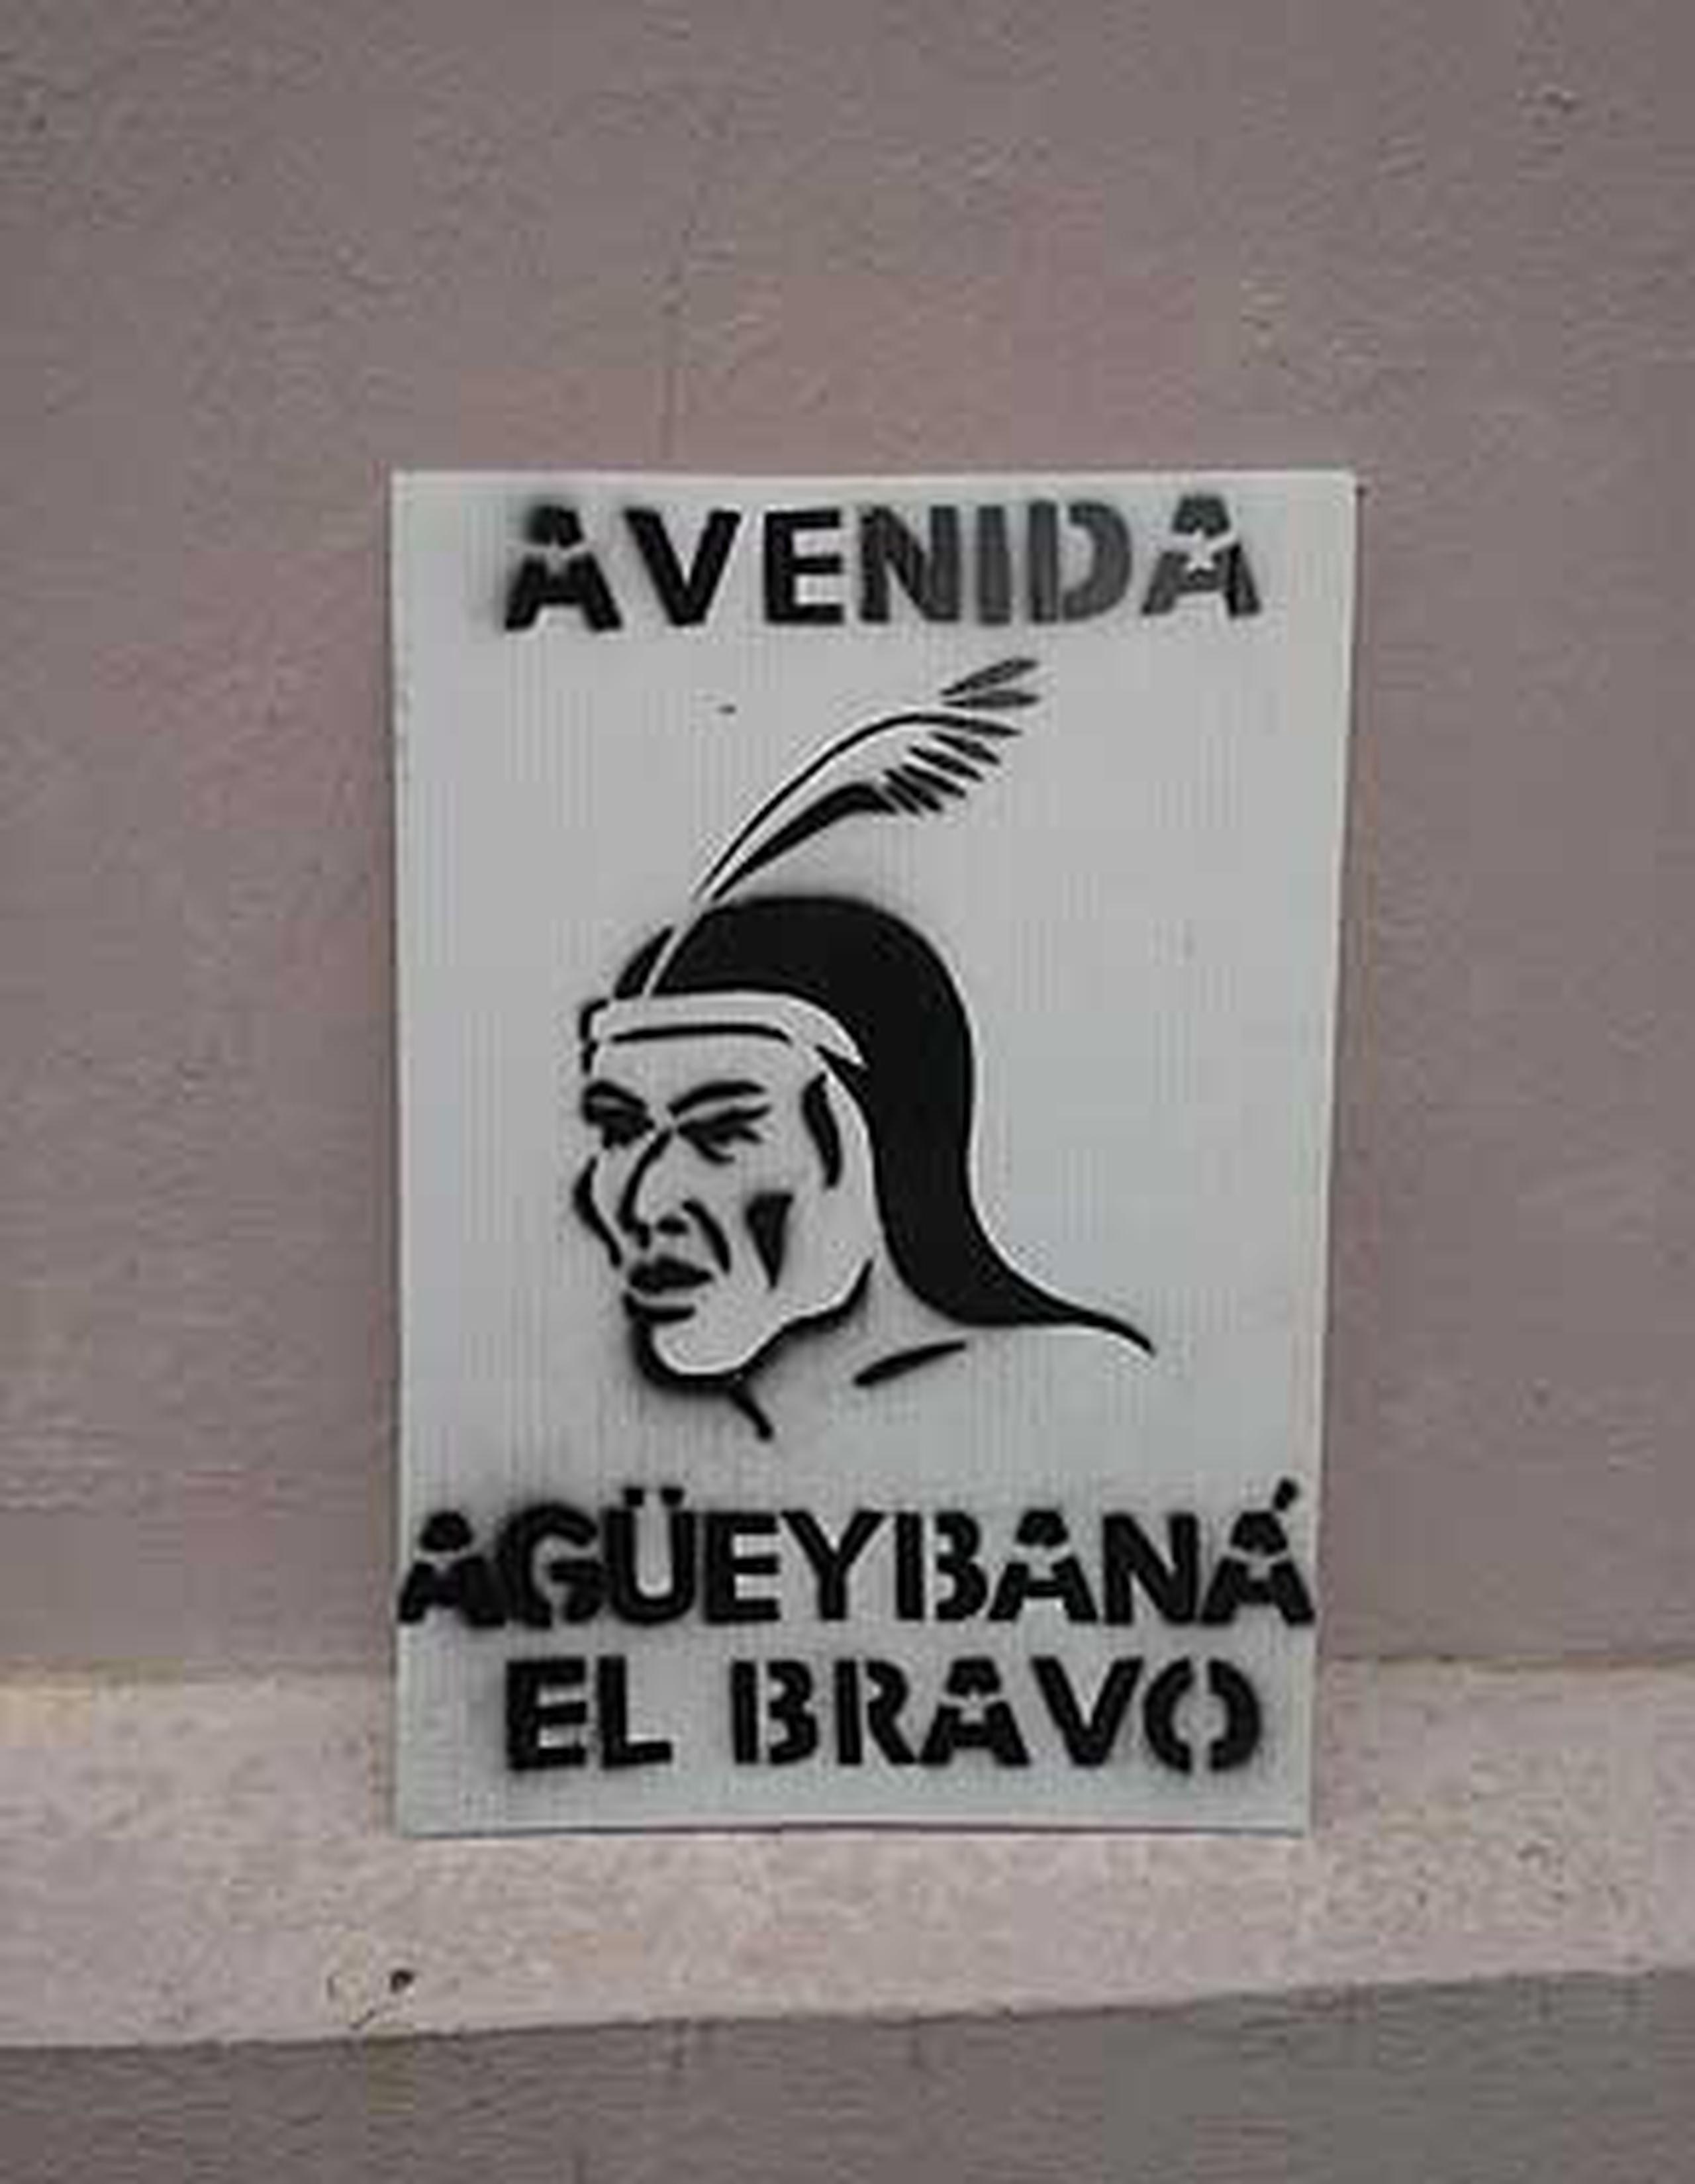 Los nacionalistas fueron detenidos el domingo por policías municipales de San Juan  cuando intentaban colocar letreros para renombrar la avenida Ponce de León como la avenida Agüeybaná “el Bravo”.  (Suministrada)